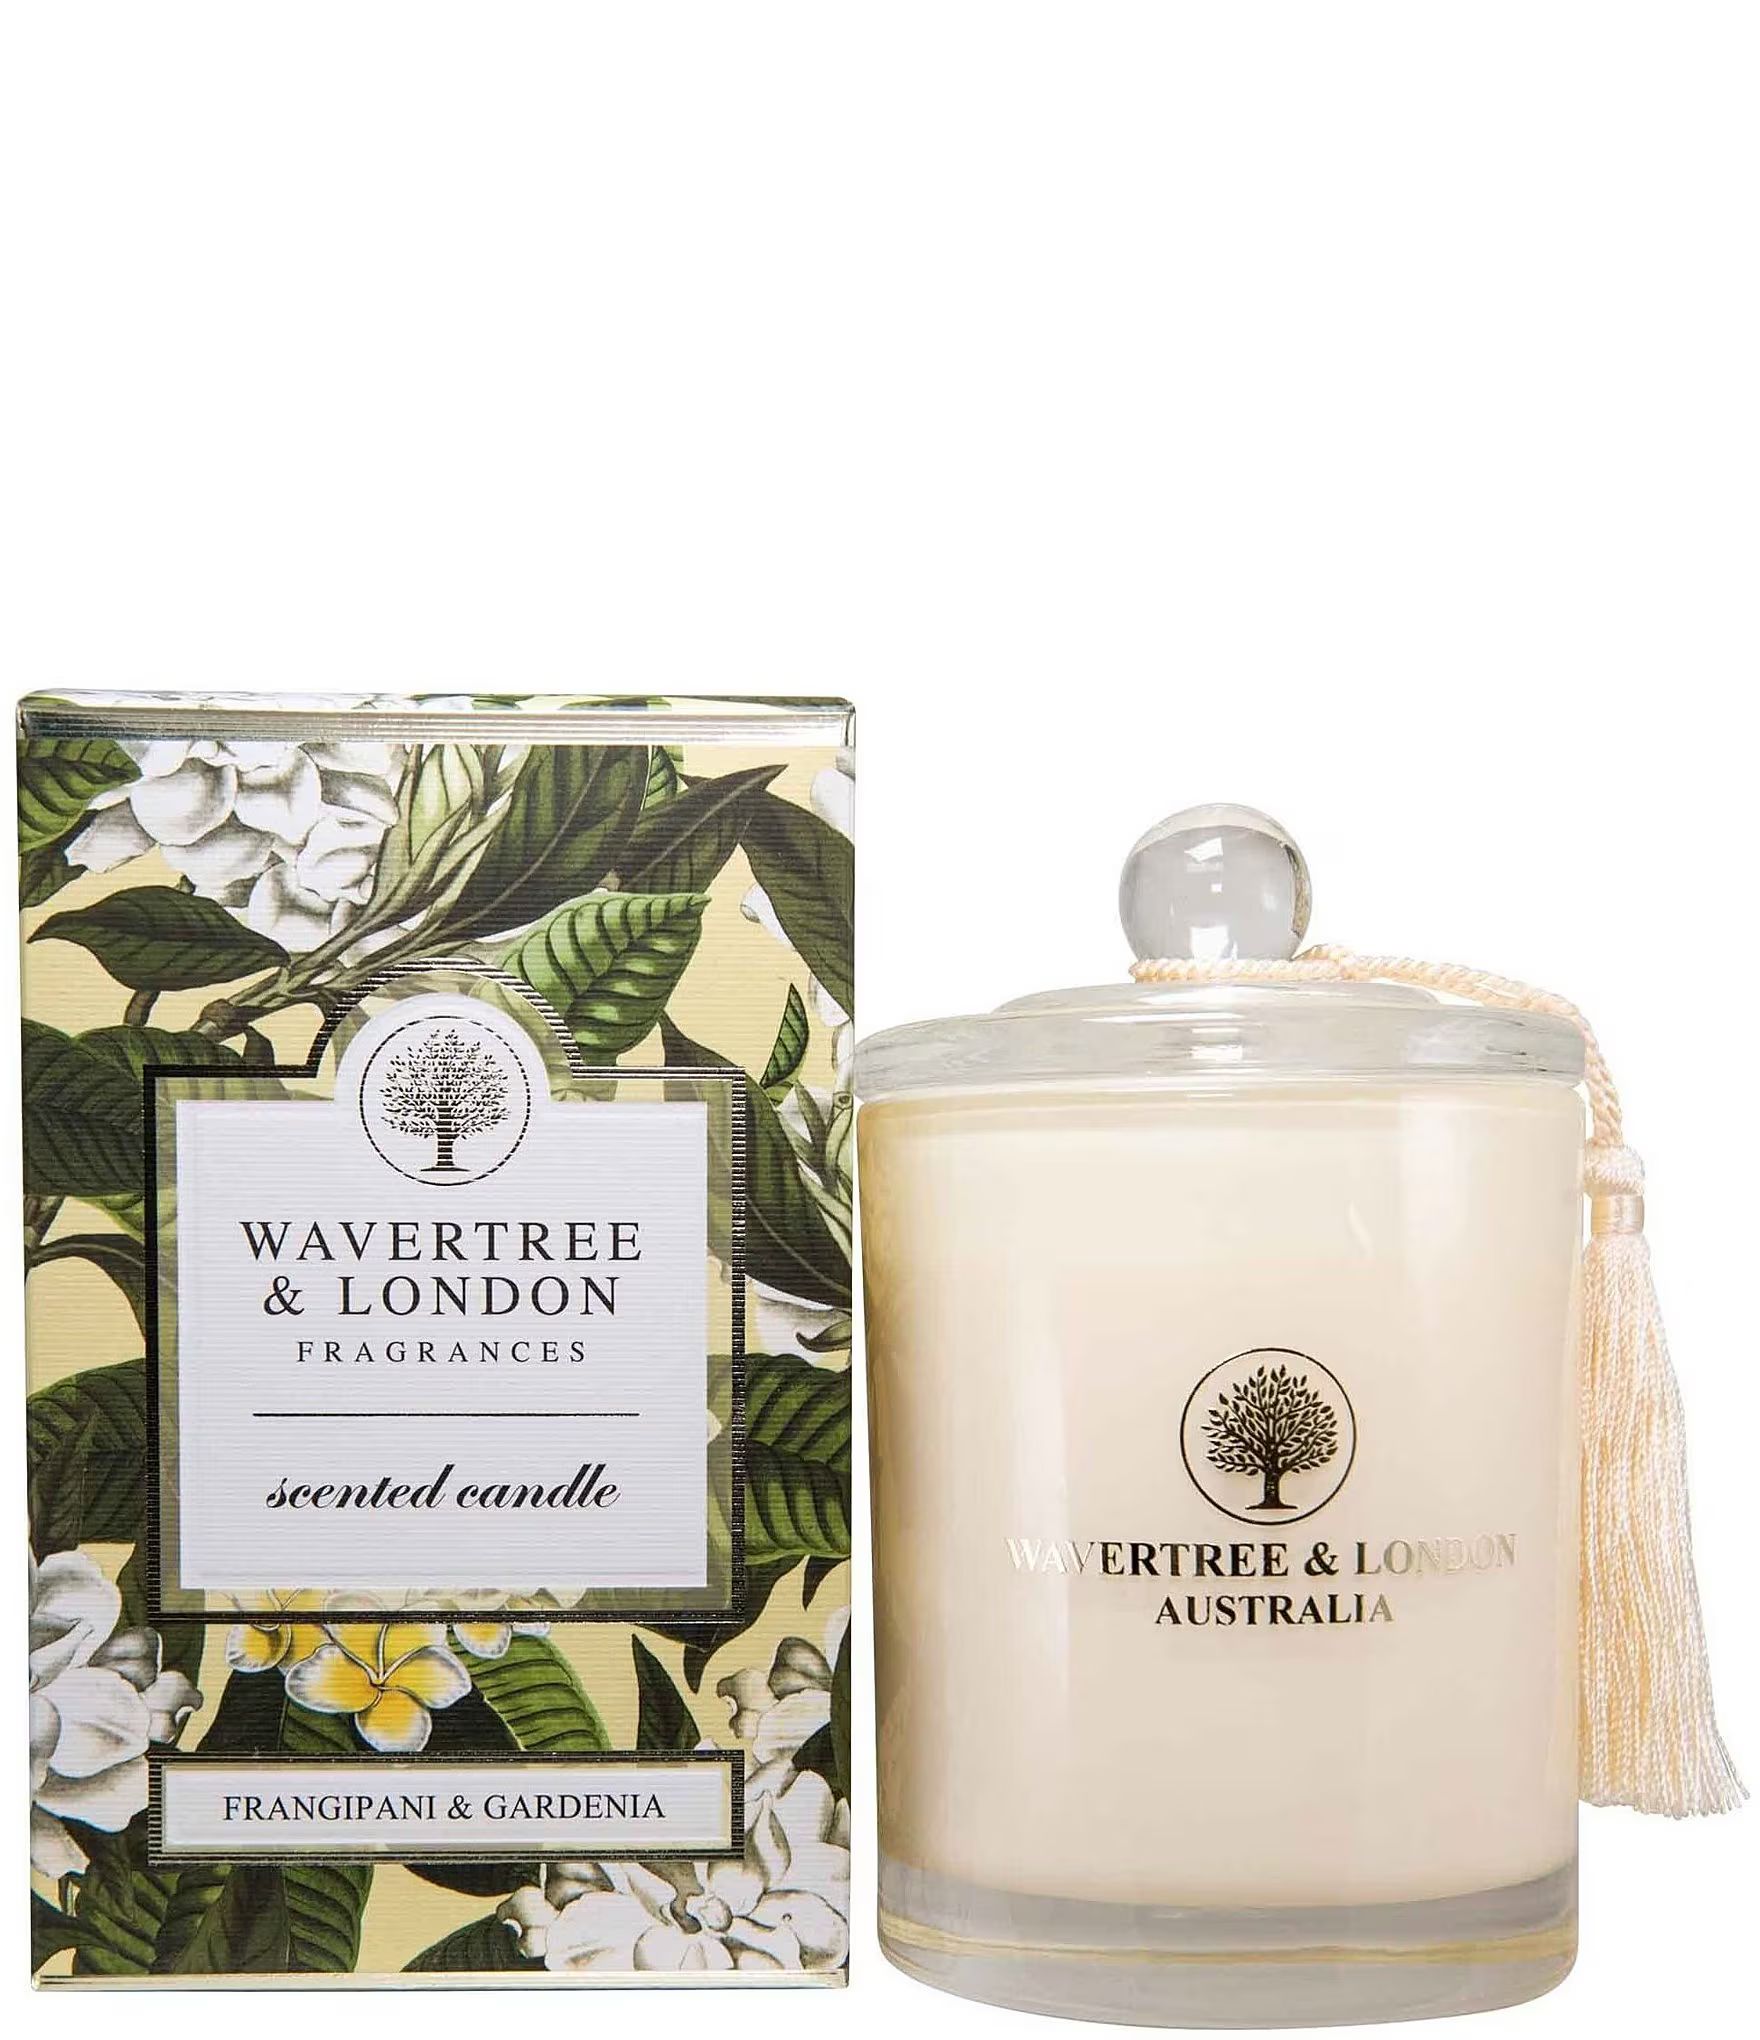 Wavertree & London Frangipani/Gardenia Candle, 11.6-oz. | Dillard's | Dillard's